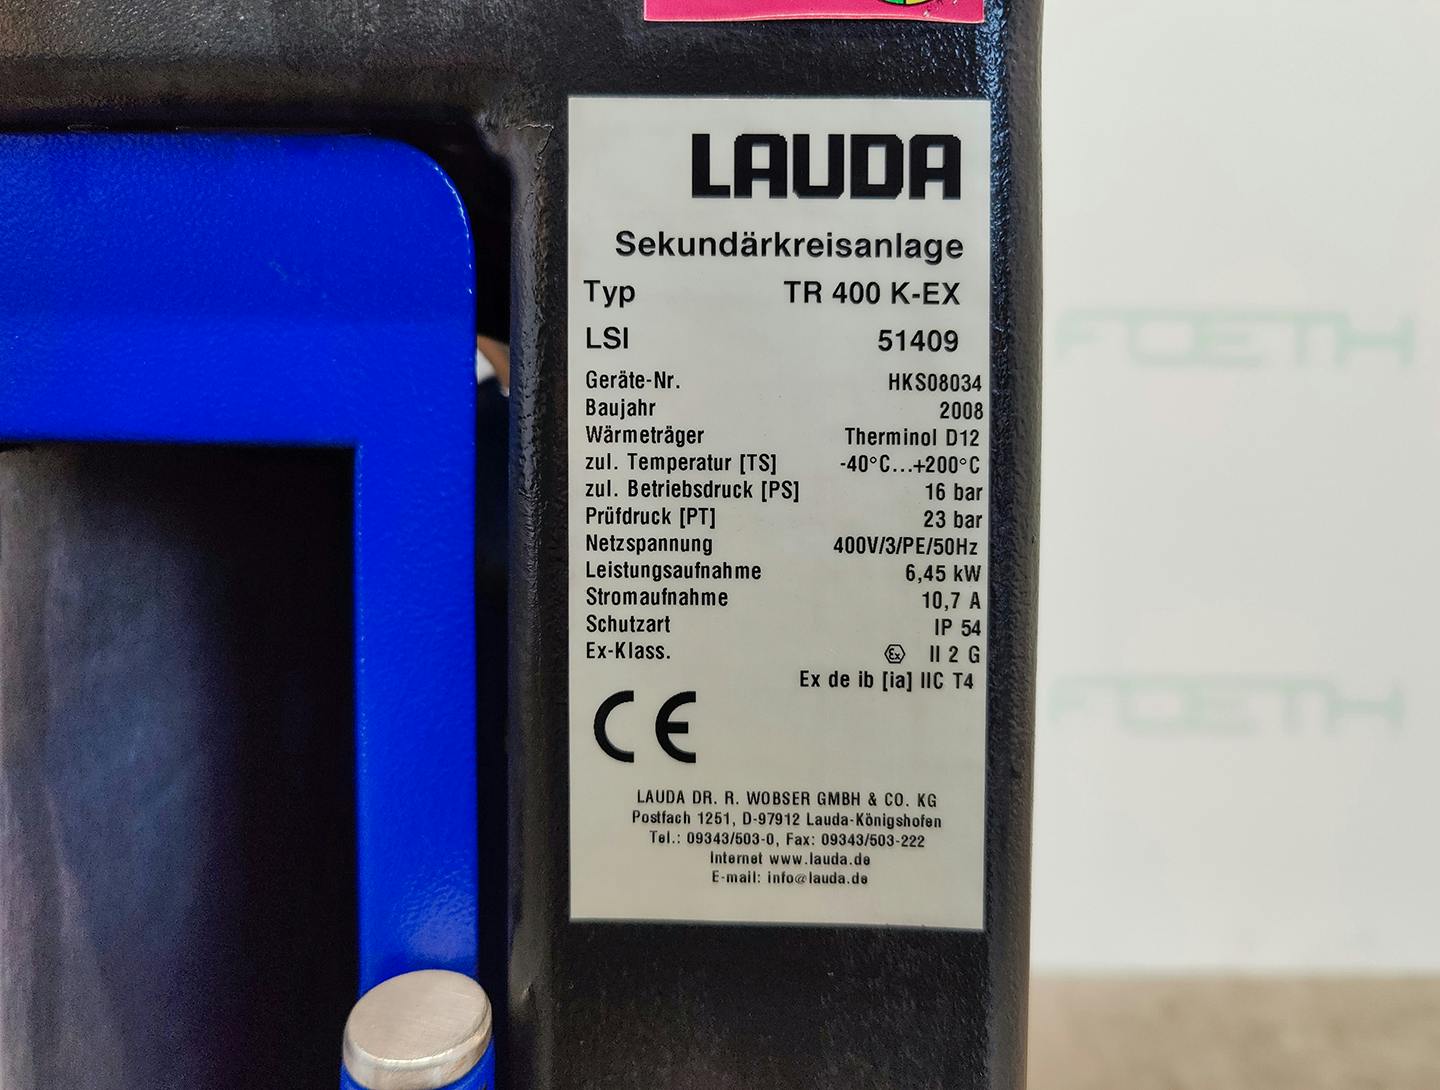 Lauda TR400 K-EX "secondary circuit system" - Atemperador - image 6